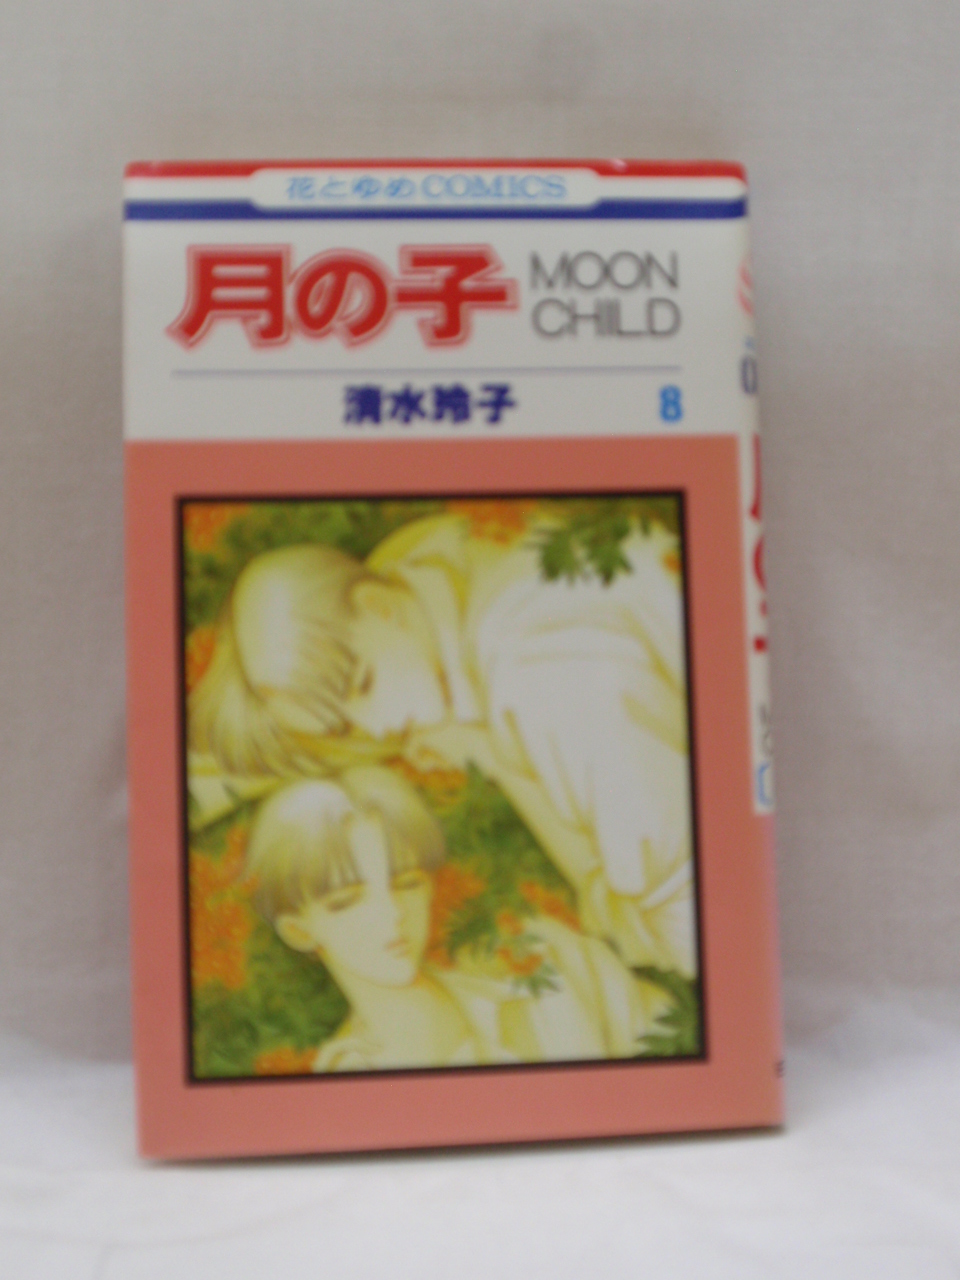 楽天市場 送料無料 H3 858 中古本 月の子 Moon Child 第8巻 花とゆめcomics ｓａｌｅ ｗｉｎｄ